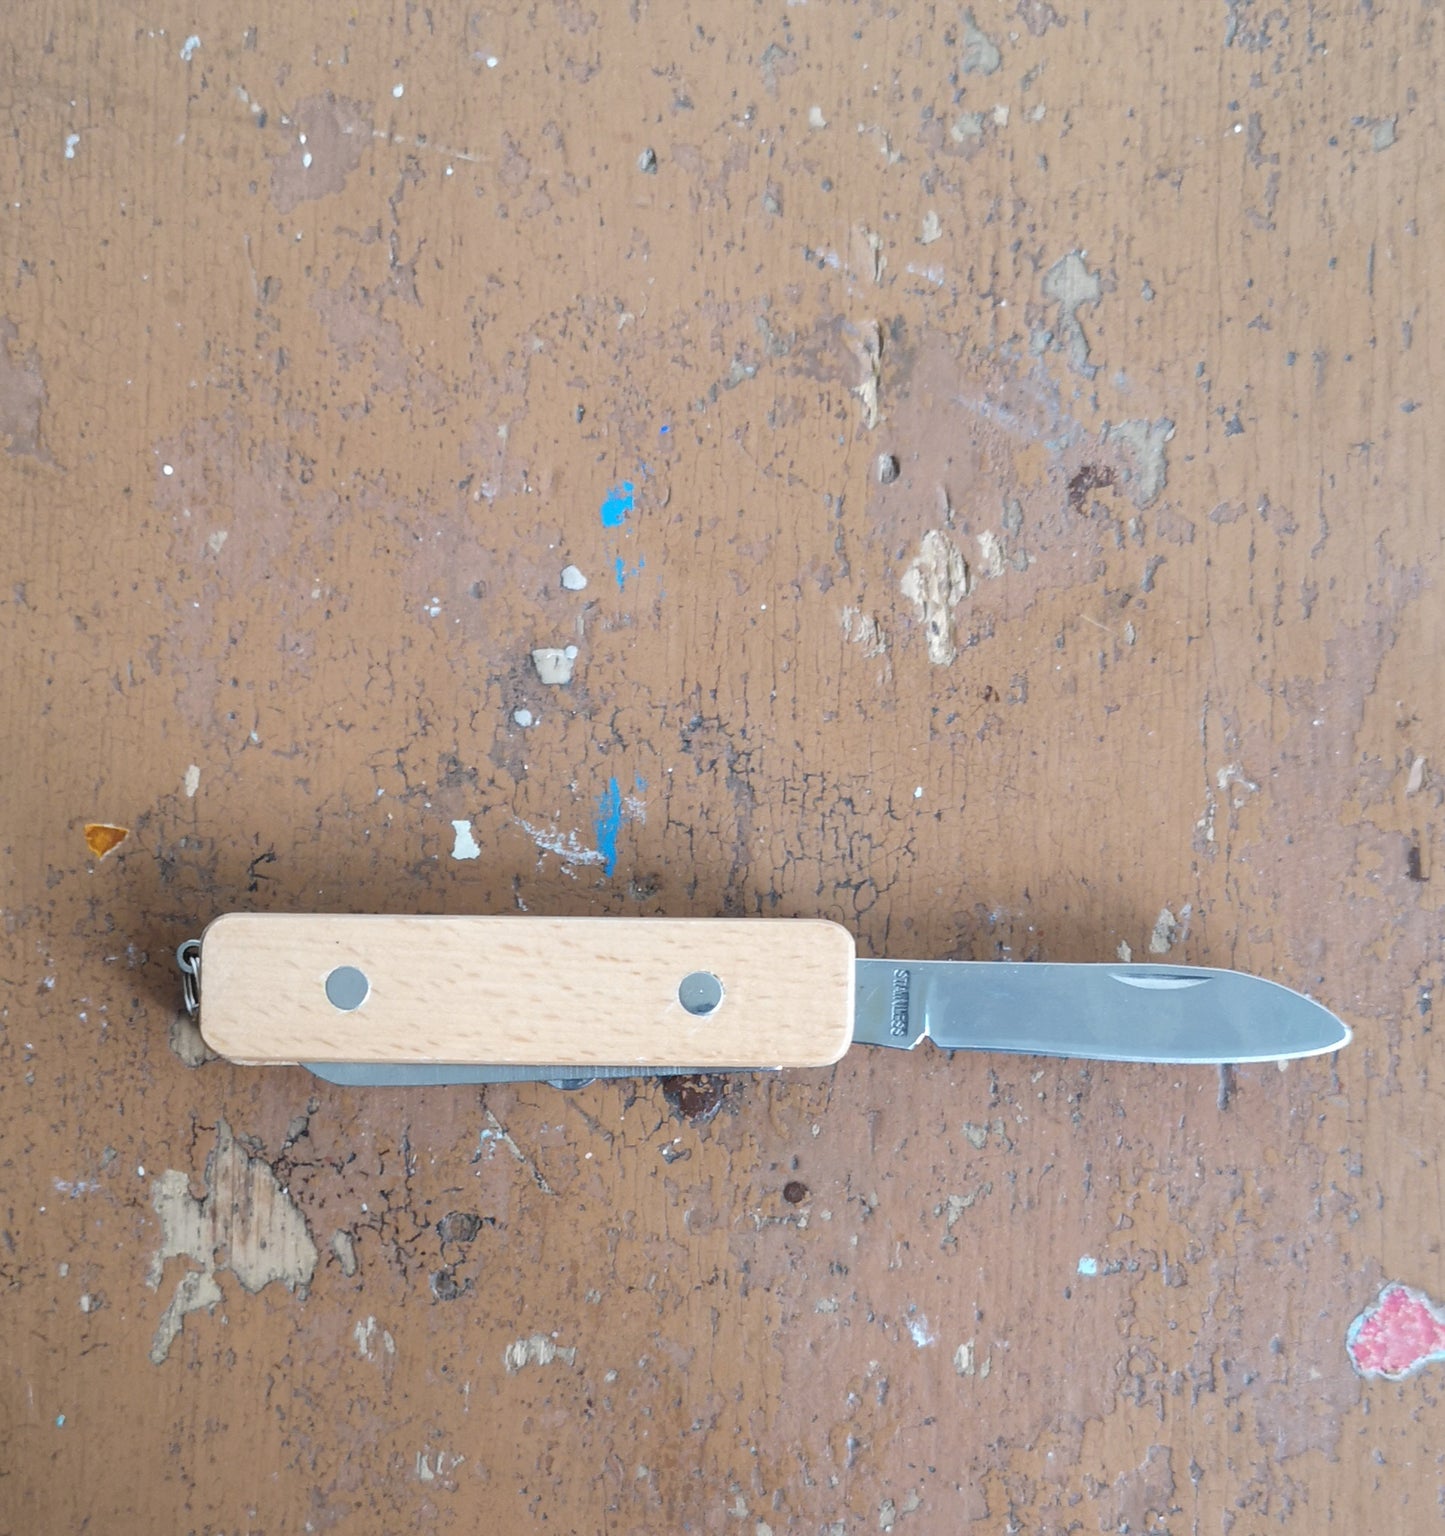 First pocket knife